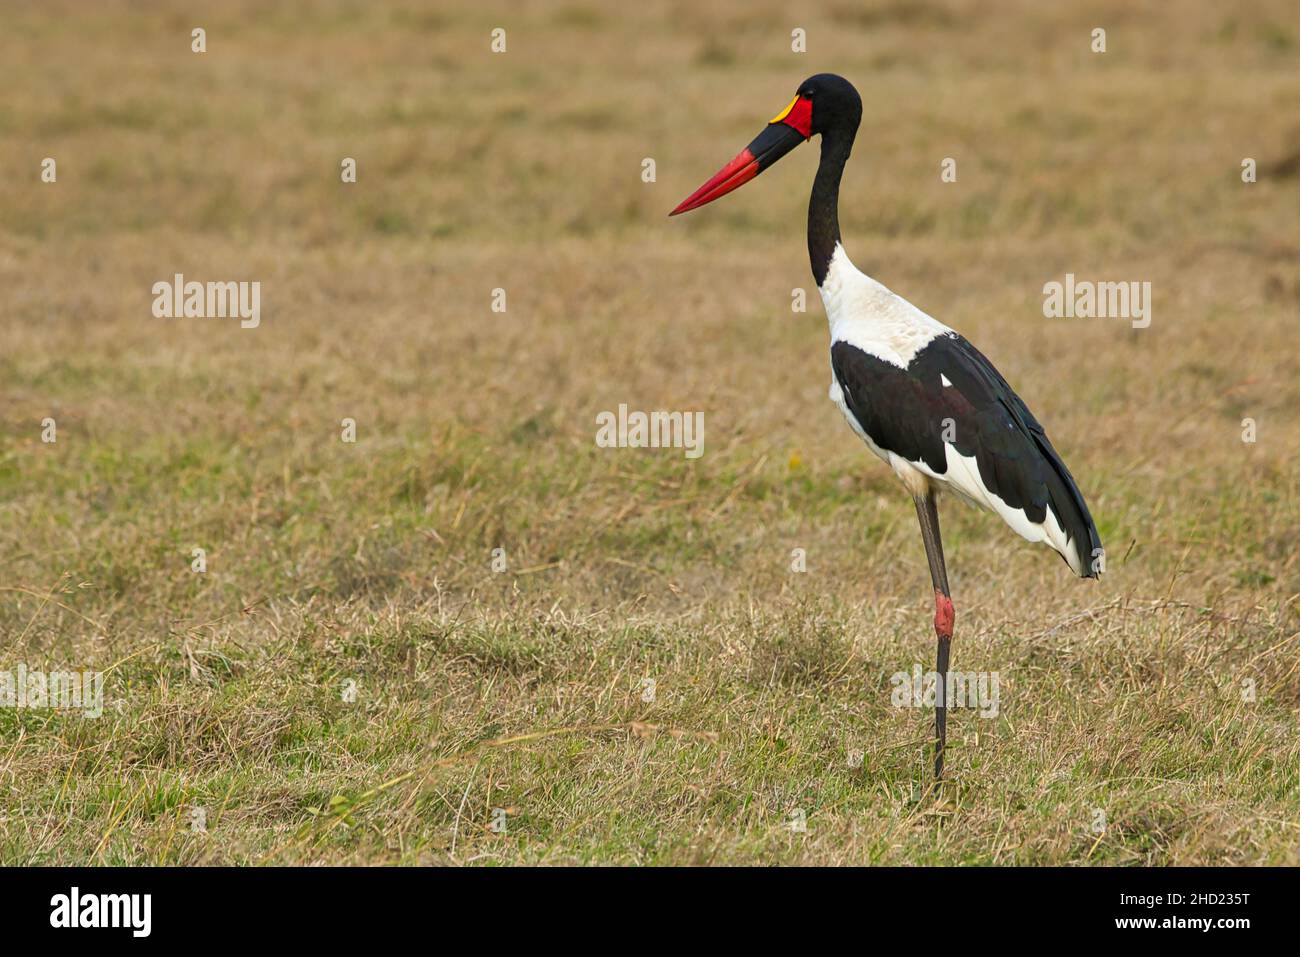 Saddle-billed stork, Ephippiorhynchus senegalensis, in the Ol Pejeta Conservancy in Kenya Stock Photo